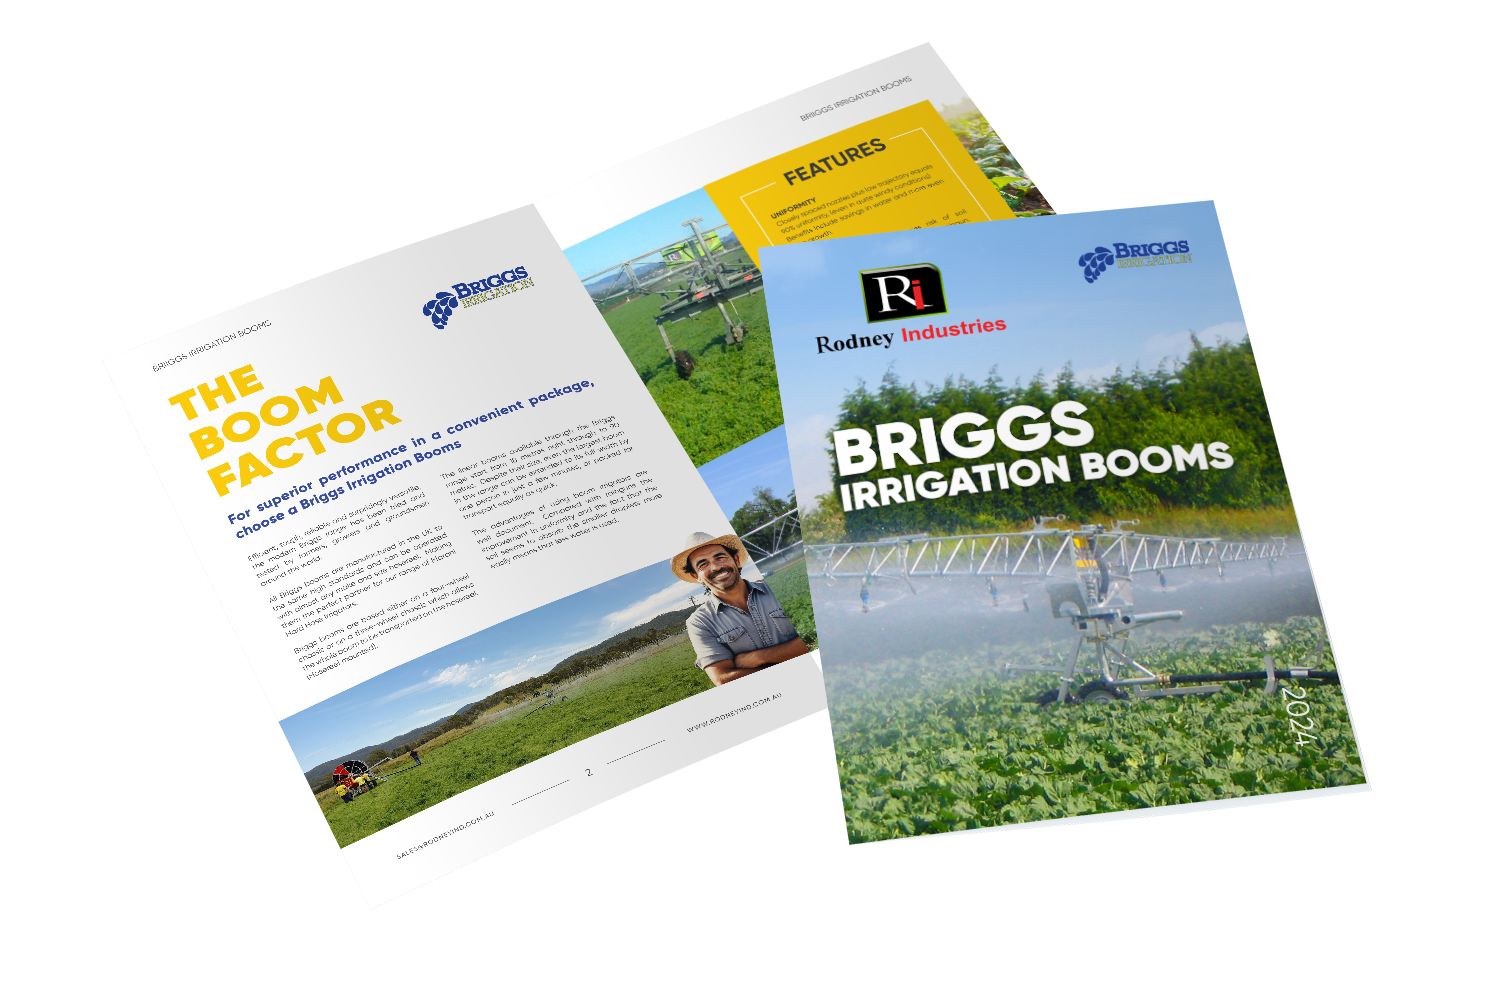 Briggs Irrigation Booms